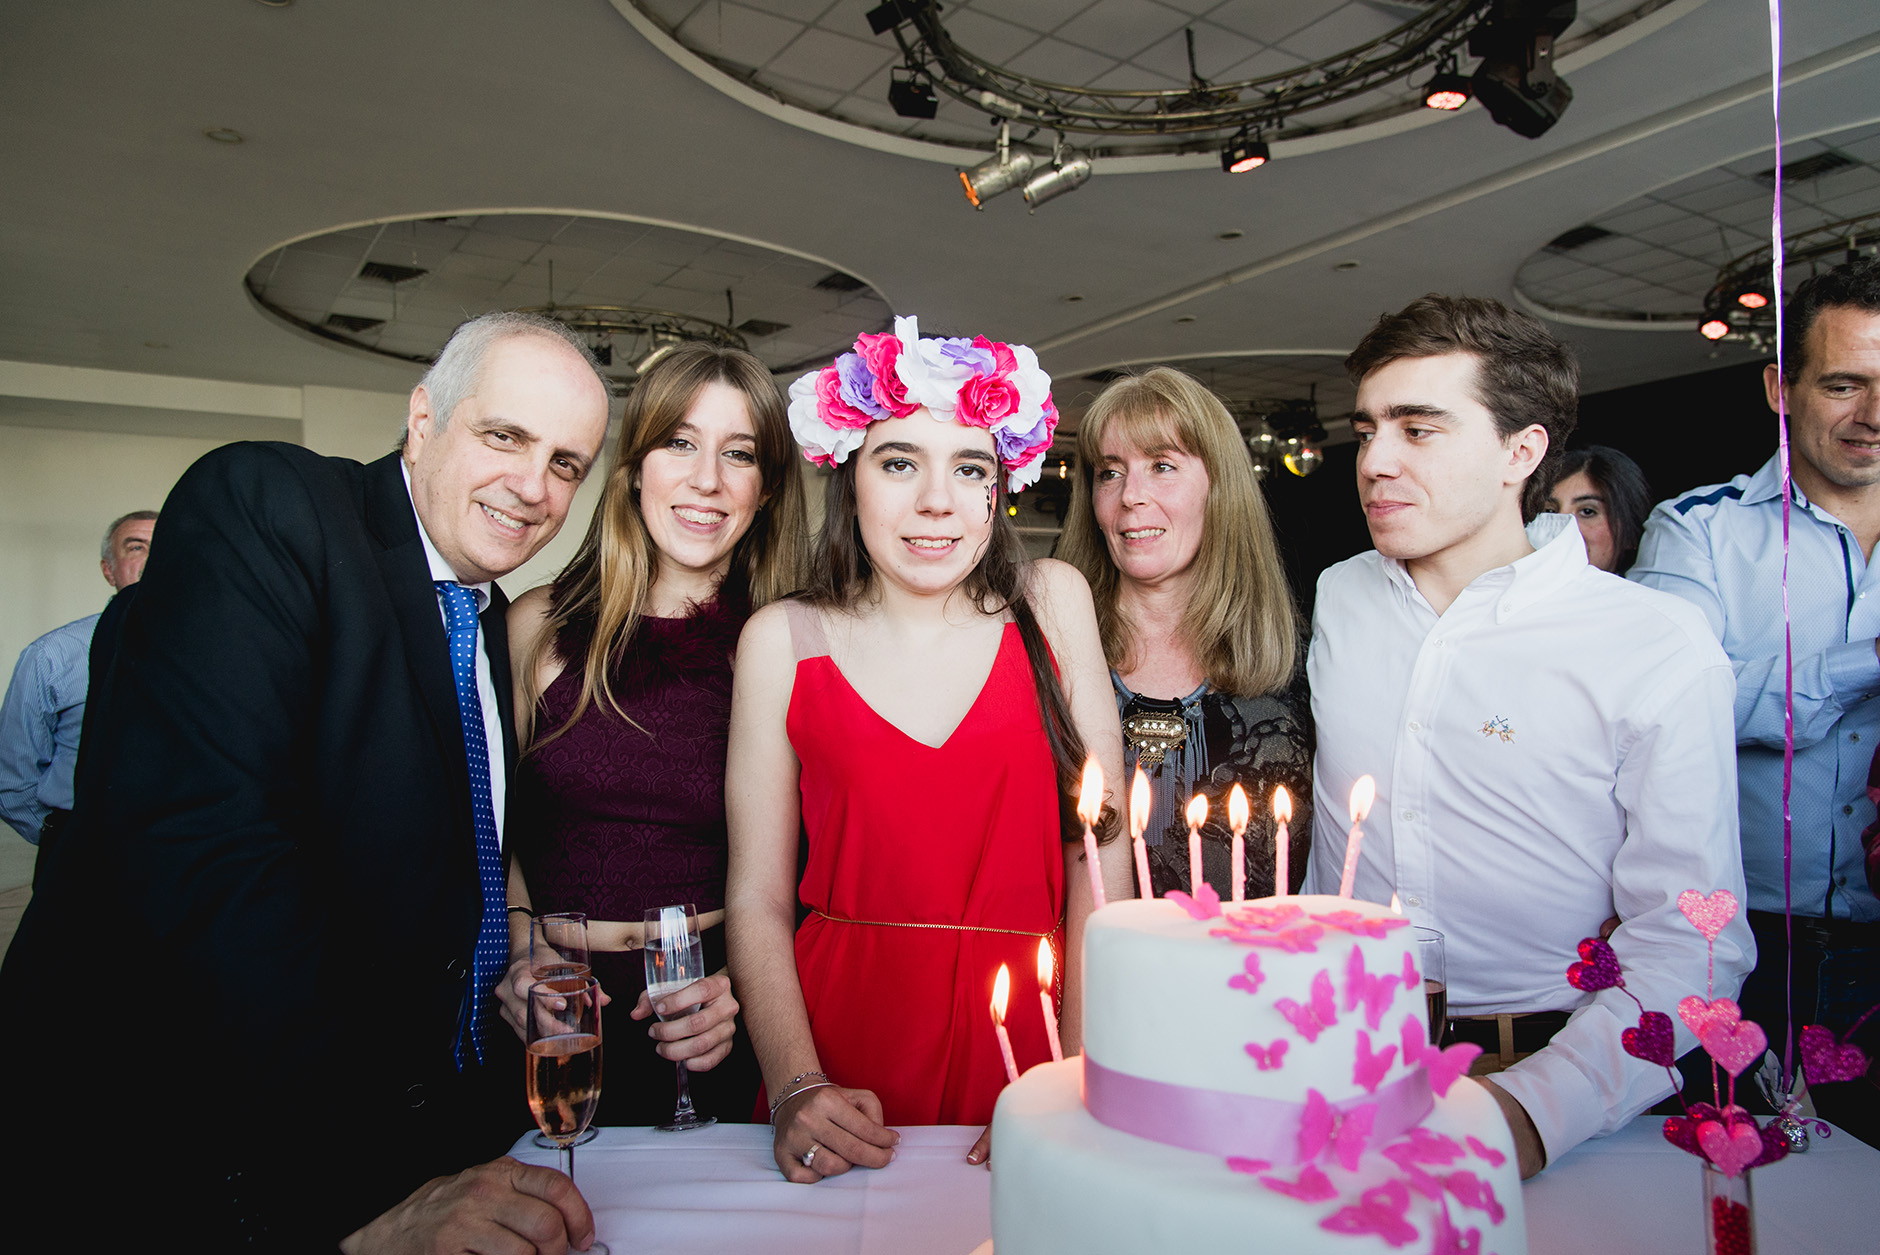 Fotos del cumpleaños de XV de Clari en Rosario Bucle Fotografias Flor Bosio y Caro Clerici